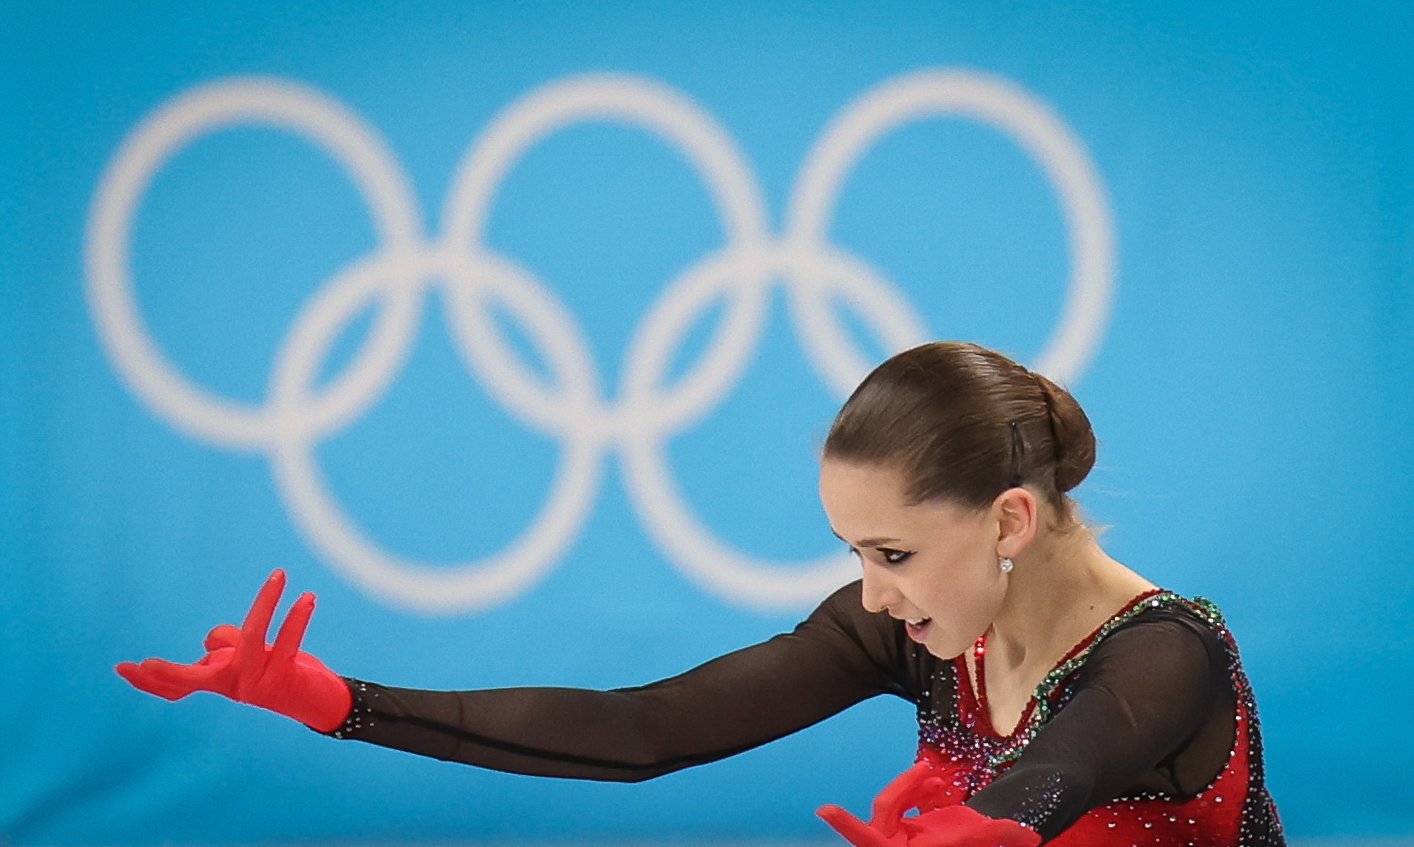 7일 중국 베이징 캐피탈 실내체육관에서 열린 2022 베이징 겨울올림픽 피겨 단체 여자 싱글 프리스케이팅에서 러시아의 카밀라 발리예바가 연기를 선보이고 있다. [뉴스1]